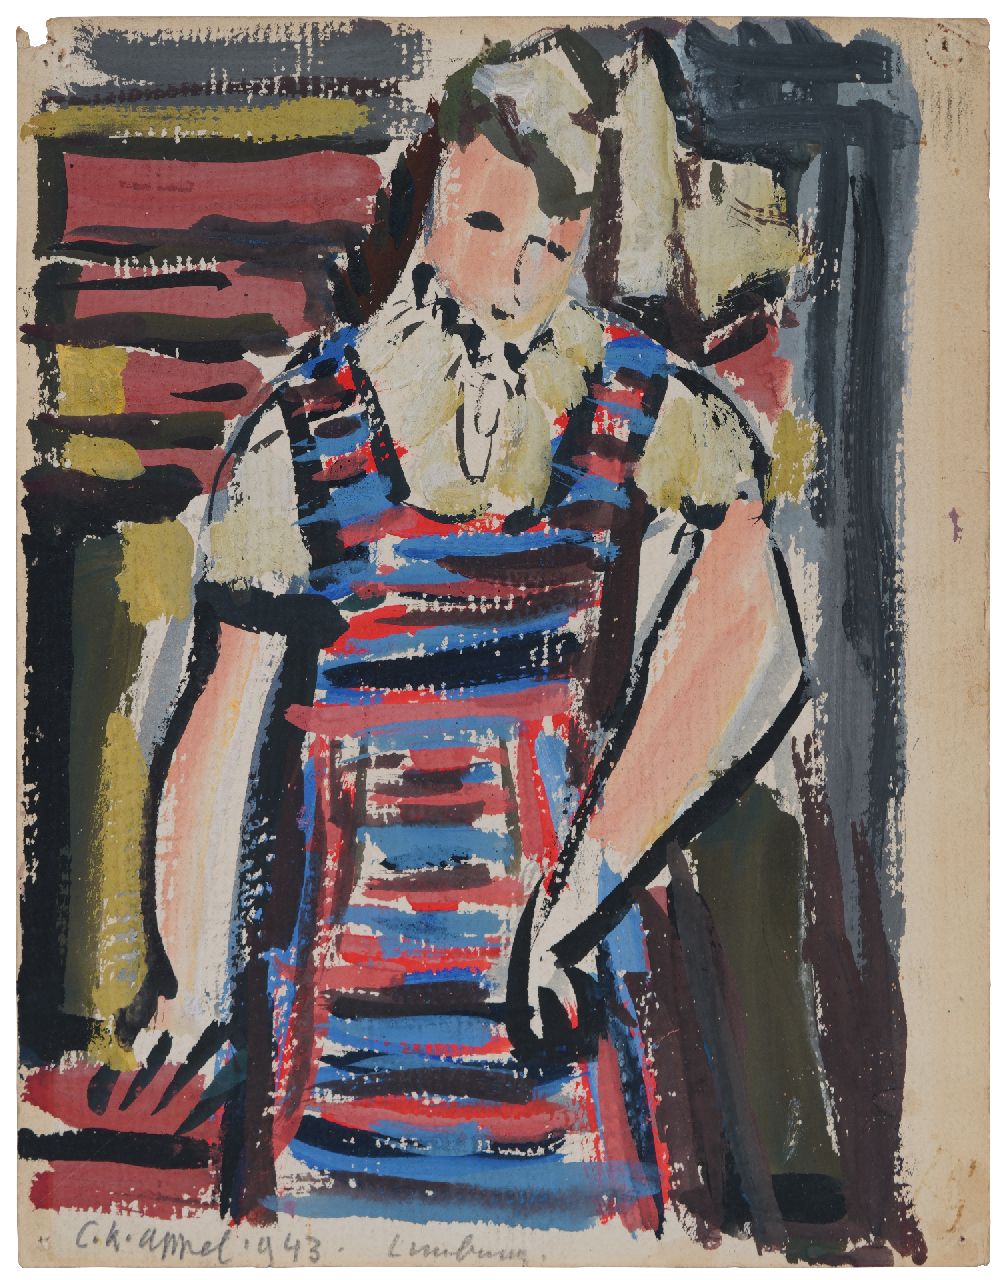 Appel C.K.  | Christiaan 'Karel' Appel | Aquarellen en tekeningen te koop aangeboden | Jonge vrouw in gestreepte jurk, gouache op papier 24,8 x 19,9 cm, gesigneerd linksonder en gedateerd 1943